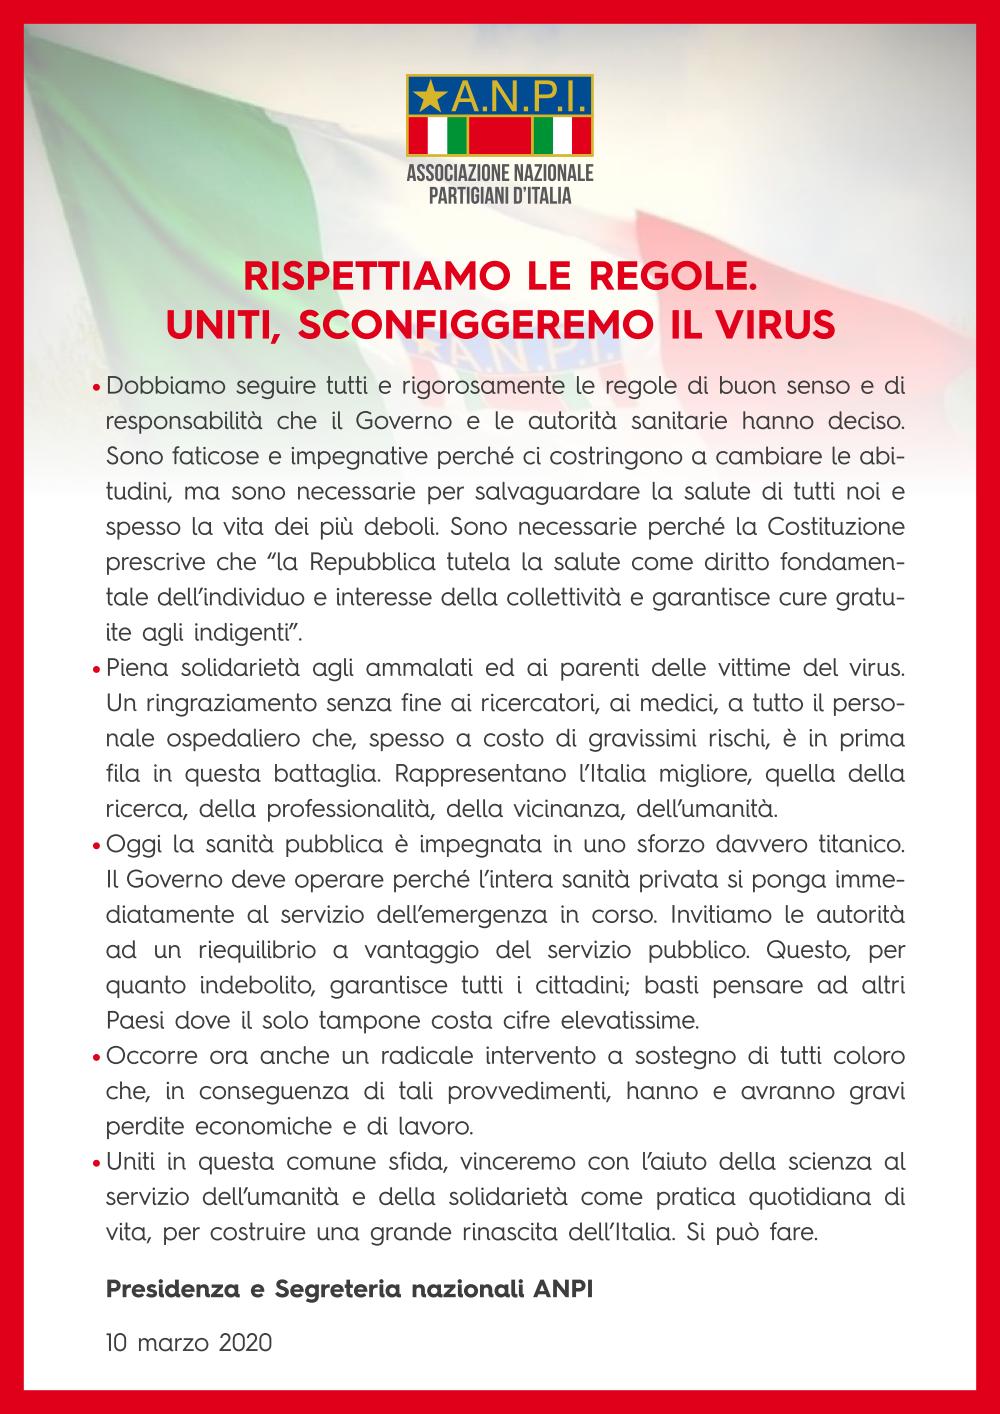 L'appello della Presidenza e della Segreteria nazionali ANPI sul coronavirus